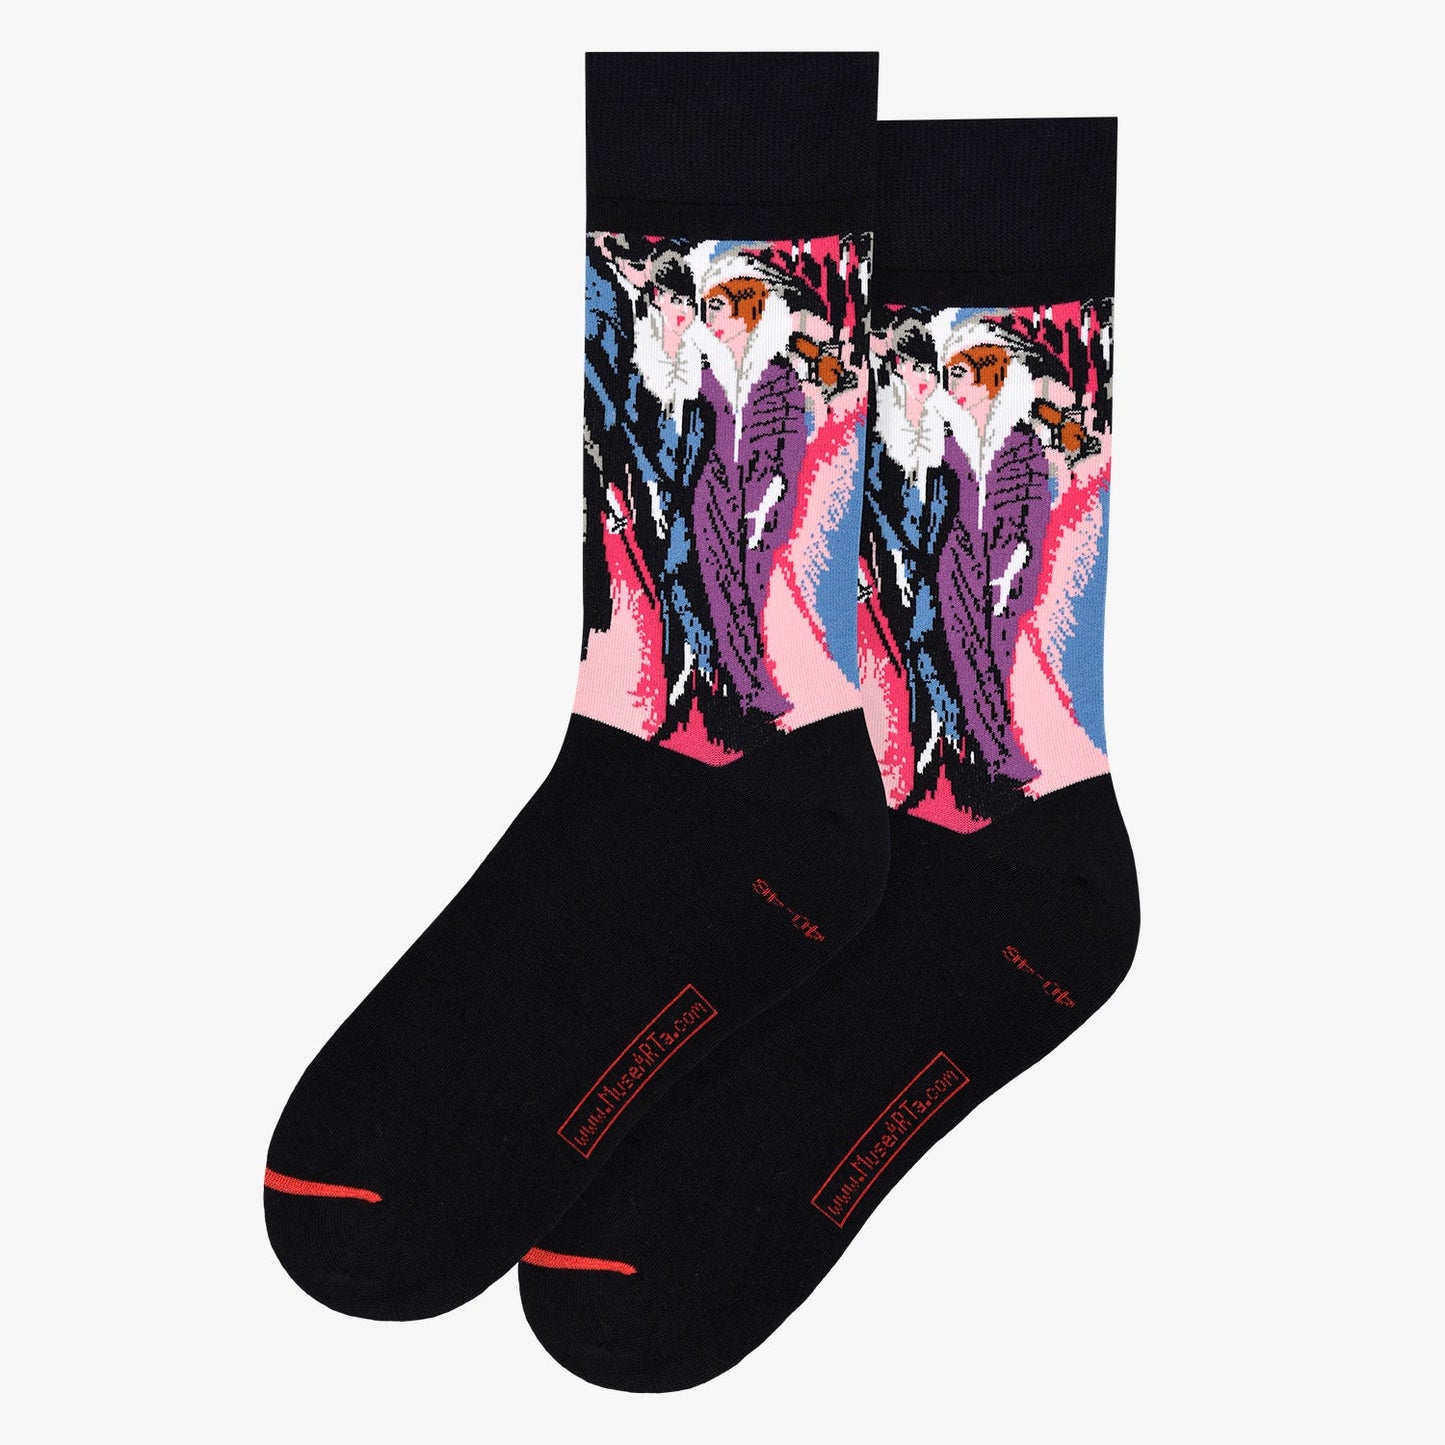 Ernst Ludwig Kirchner The Street Socks